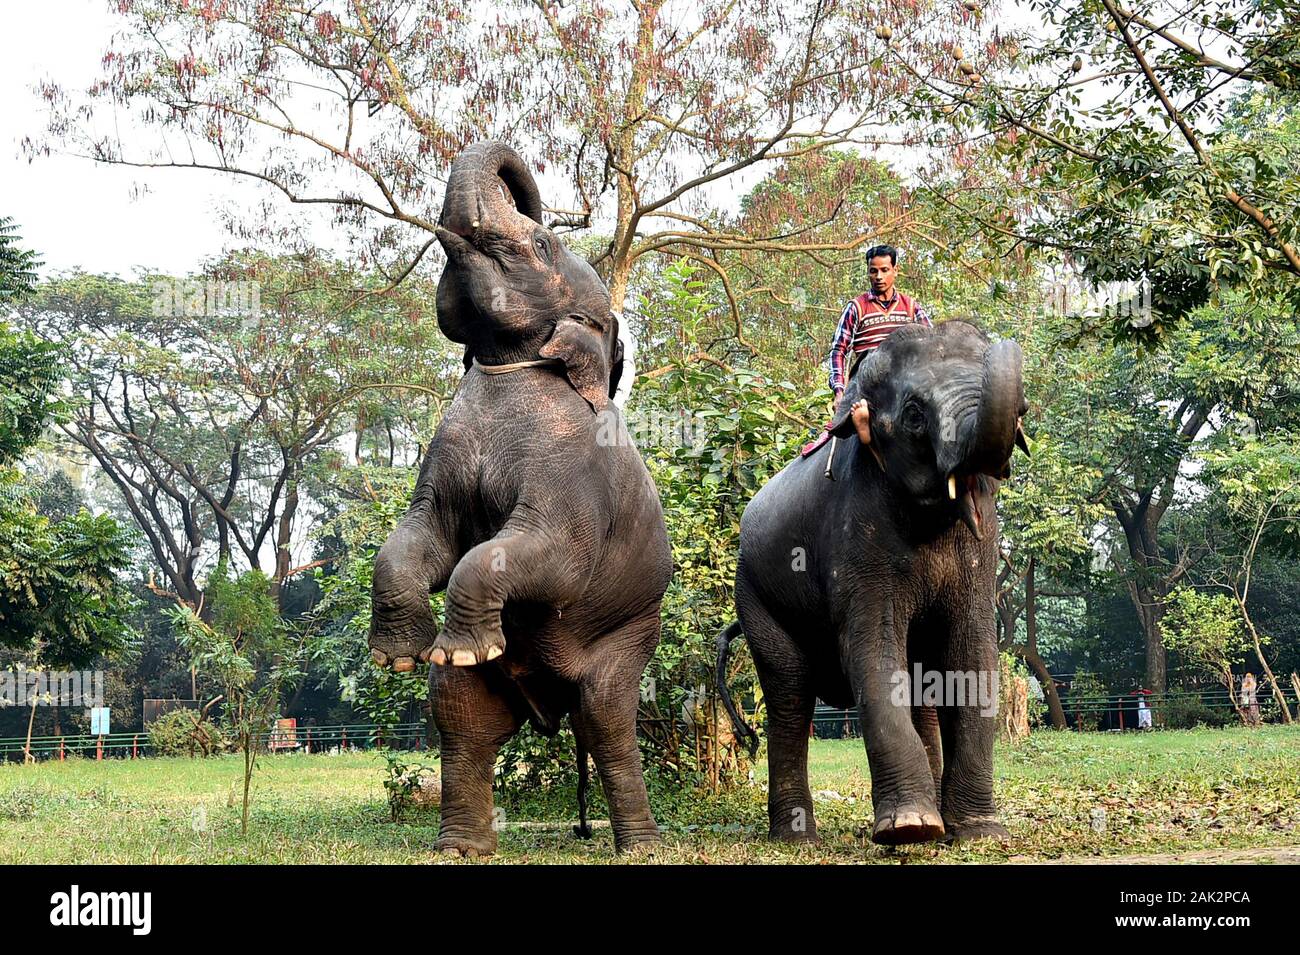 Dhaka. El 6 de enero, 2020. Los elefantes realizar durante una sesión de entrenamiento en el Zoológico Nacional de Bangladesh en Dhaka, Bangladesh, el 6 de enero de 2020. Como parte de la rutina diaria y la gestión, guarda parques y personal en el Zoológico Nacional de Bangladesh en Dhaka han sido el adiestramiento de los animales para realizar. Crédito: Stringer/Xinhua/Alamy Live News Foto de stock